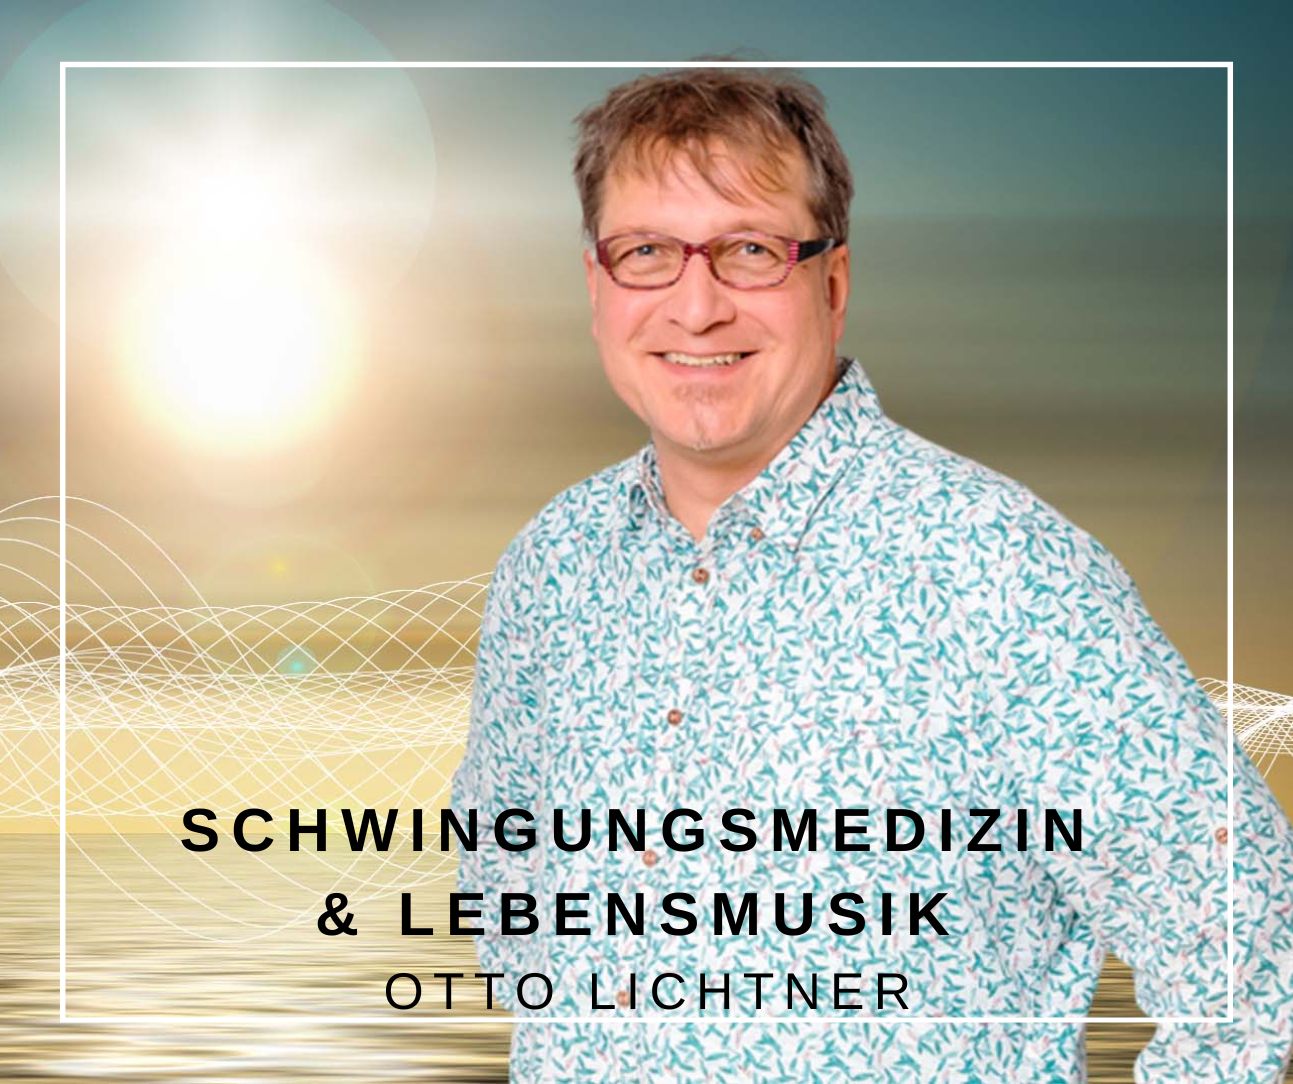 Otto Lichtner Schwingungsmedizin Lebensmusik Quantenheilung in der #14. Ausgabe des Herz Projekt Magazins Healthy, happy & holy